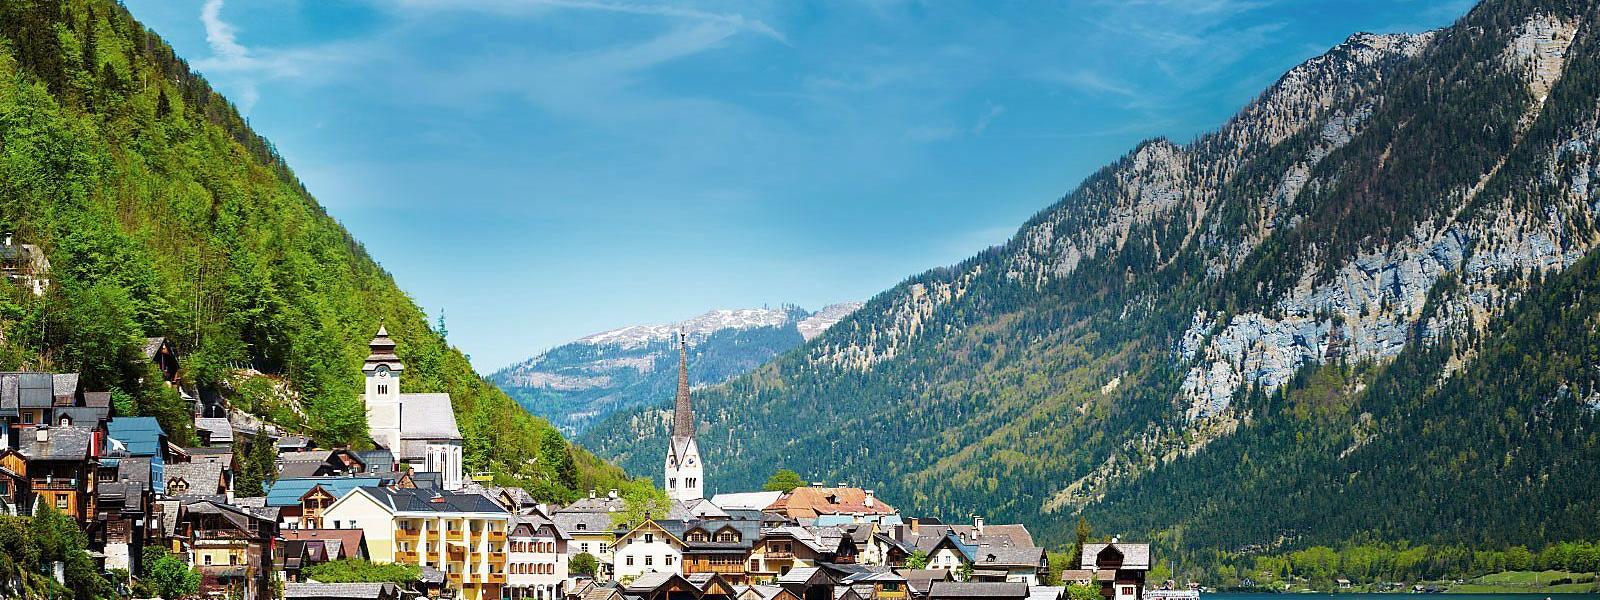 Luxus Ferienhäuser und Ferienwohnungen in Sankt Anton am Arlberg - BELLEVUE Ferienhaus